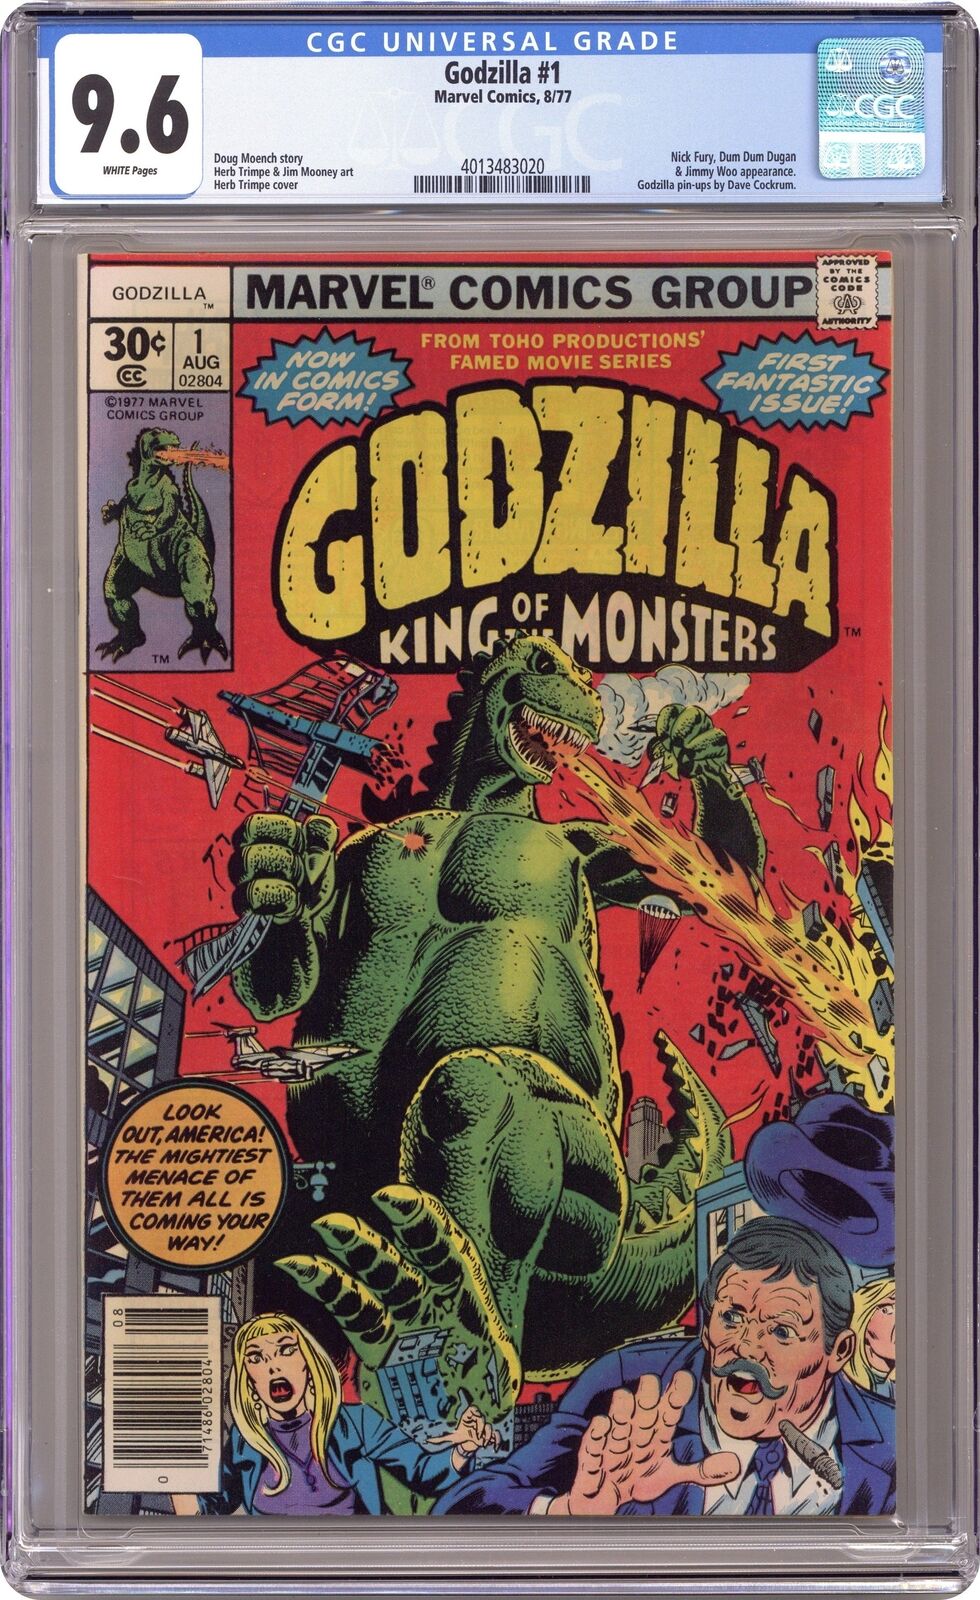 Godzilla #1 CGC 9.6 1977 4013483020